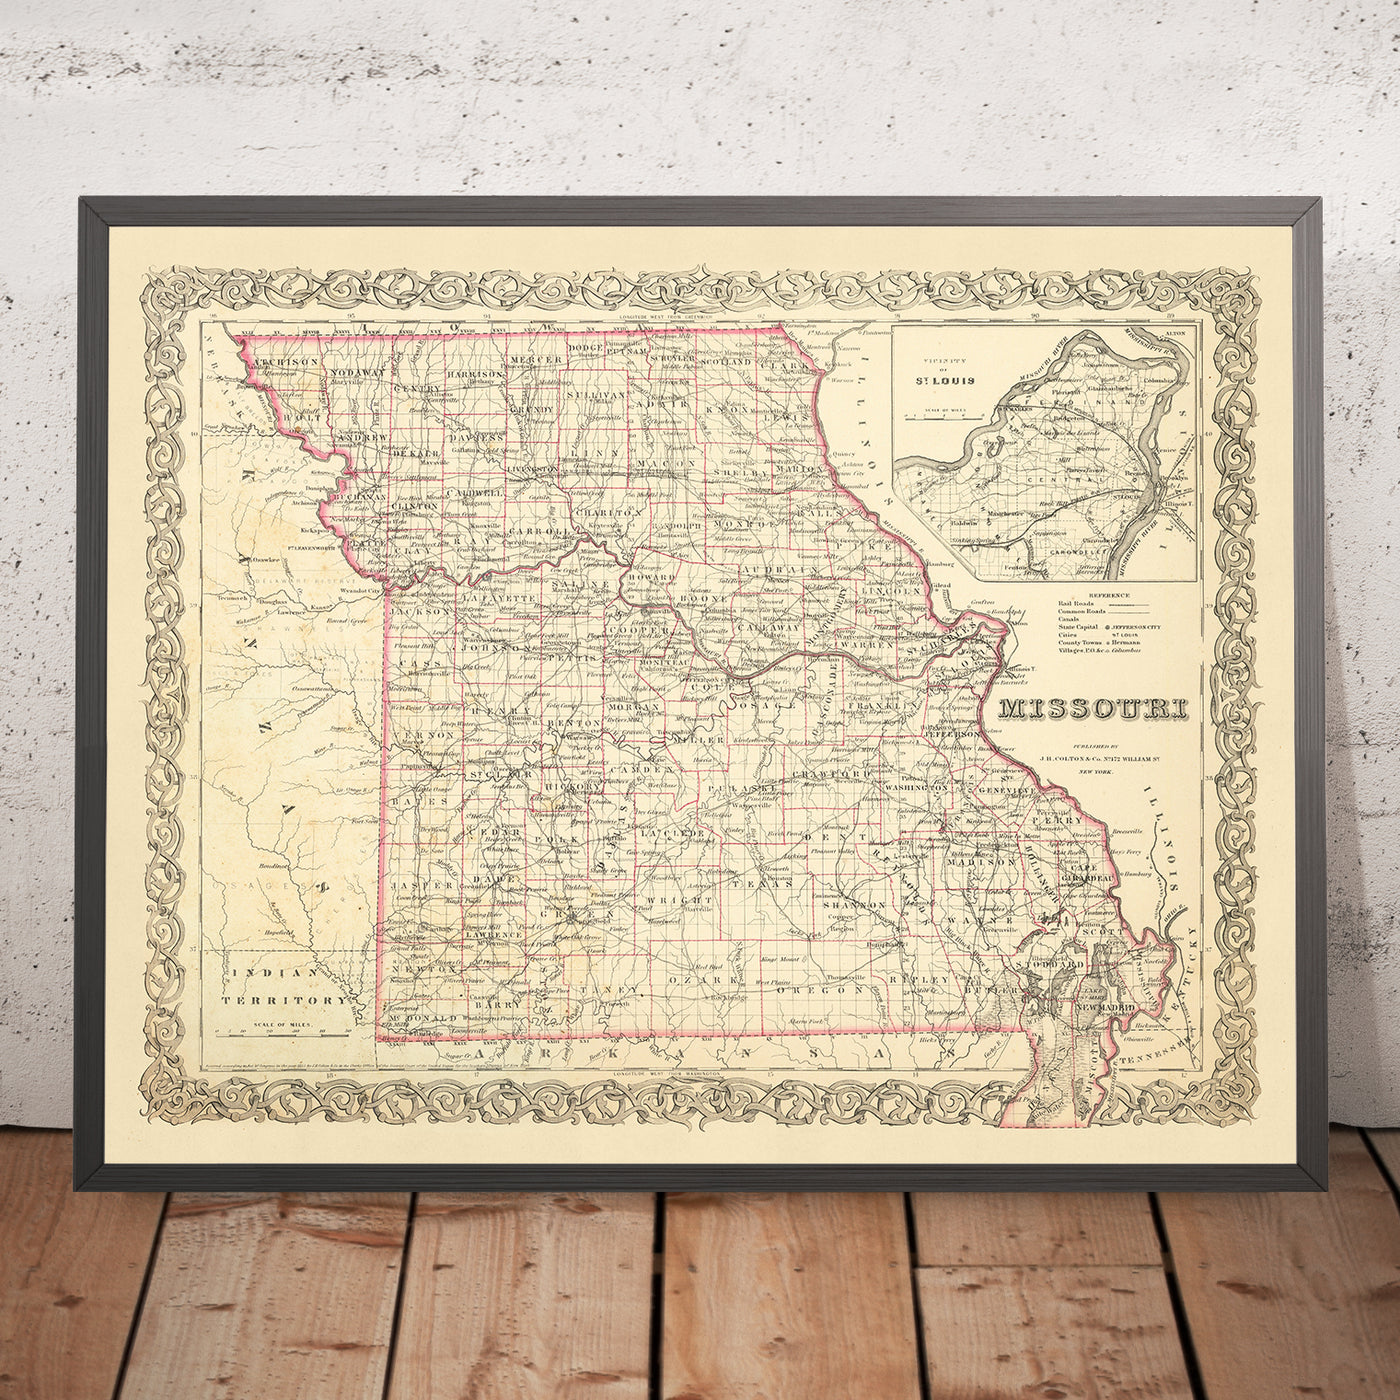 Mapa antiguo de Missouri por JH Colton, 1860: St. Louis, Kansas City, Springfield, Independence, Jefferson City